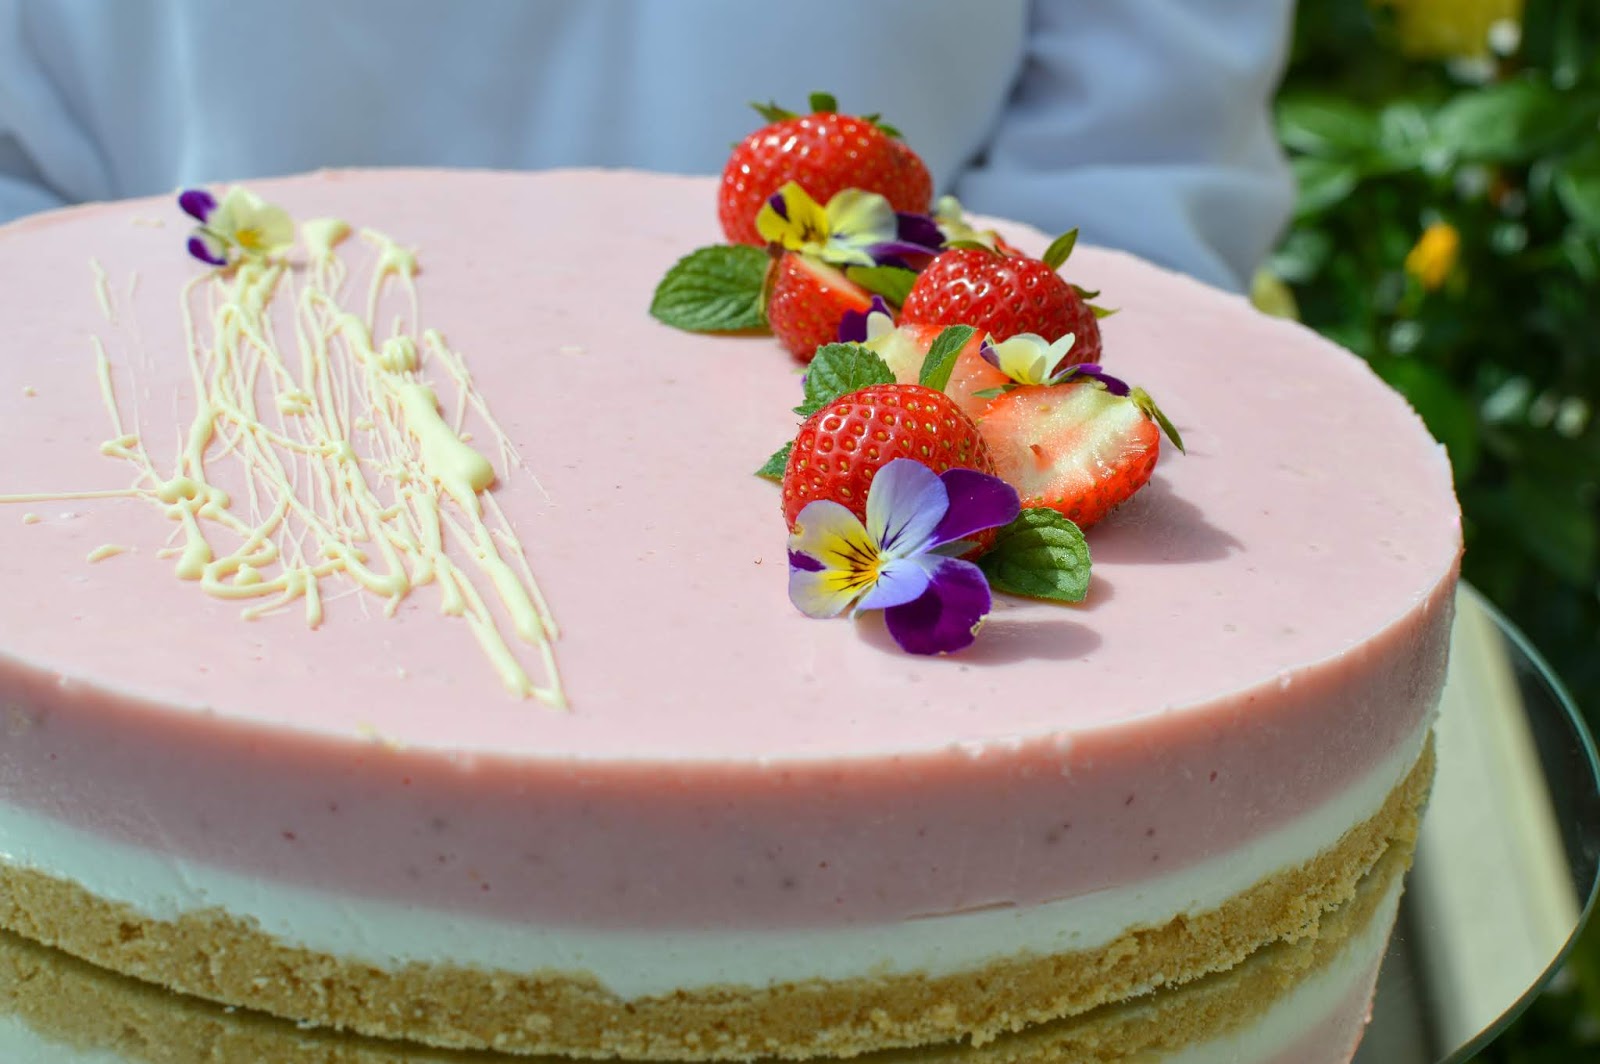 Julias zuckersüße Kuchenwelt: Kühlschrankkuchen: Erdbeer-Joghurt-Torte ...